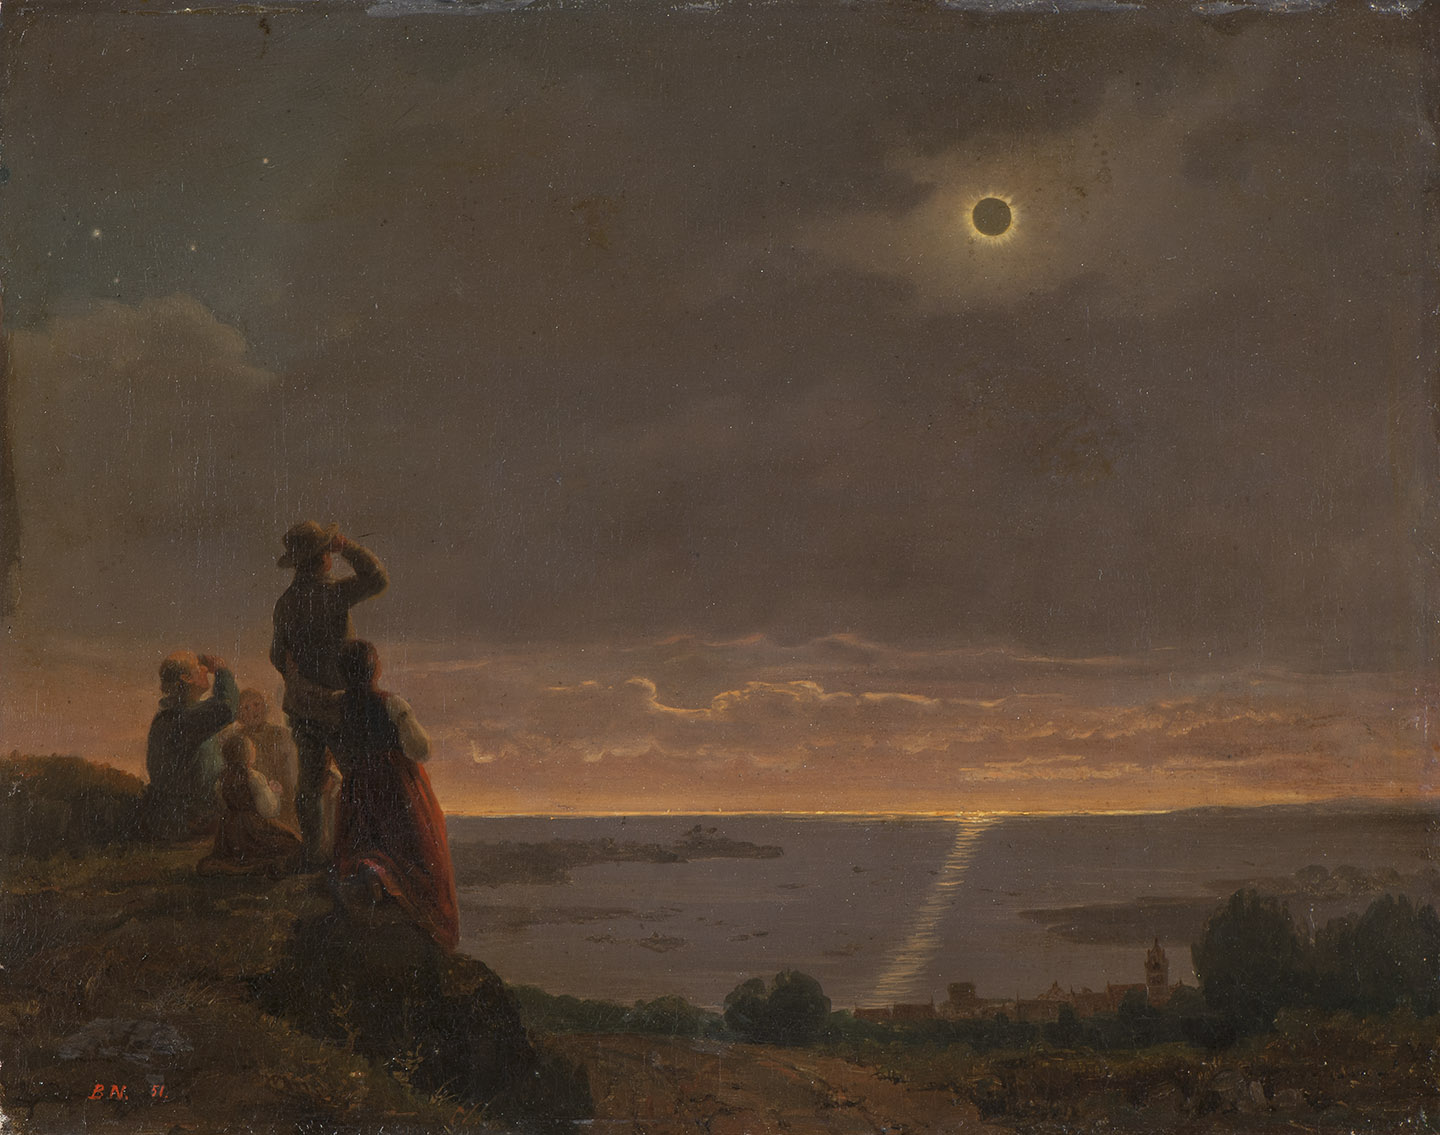 Tác phẩm “Solar Eclipse” (Nhật thực) của họa sĩ Bengt Nordenberg, năm 1851. Tranh sơn dầu trên vải canvas. Bảo tàng Mỹ thuật Quốc gia, Stockholm, Thụy Điển. (PUBLIC DOMAIN)